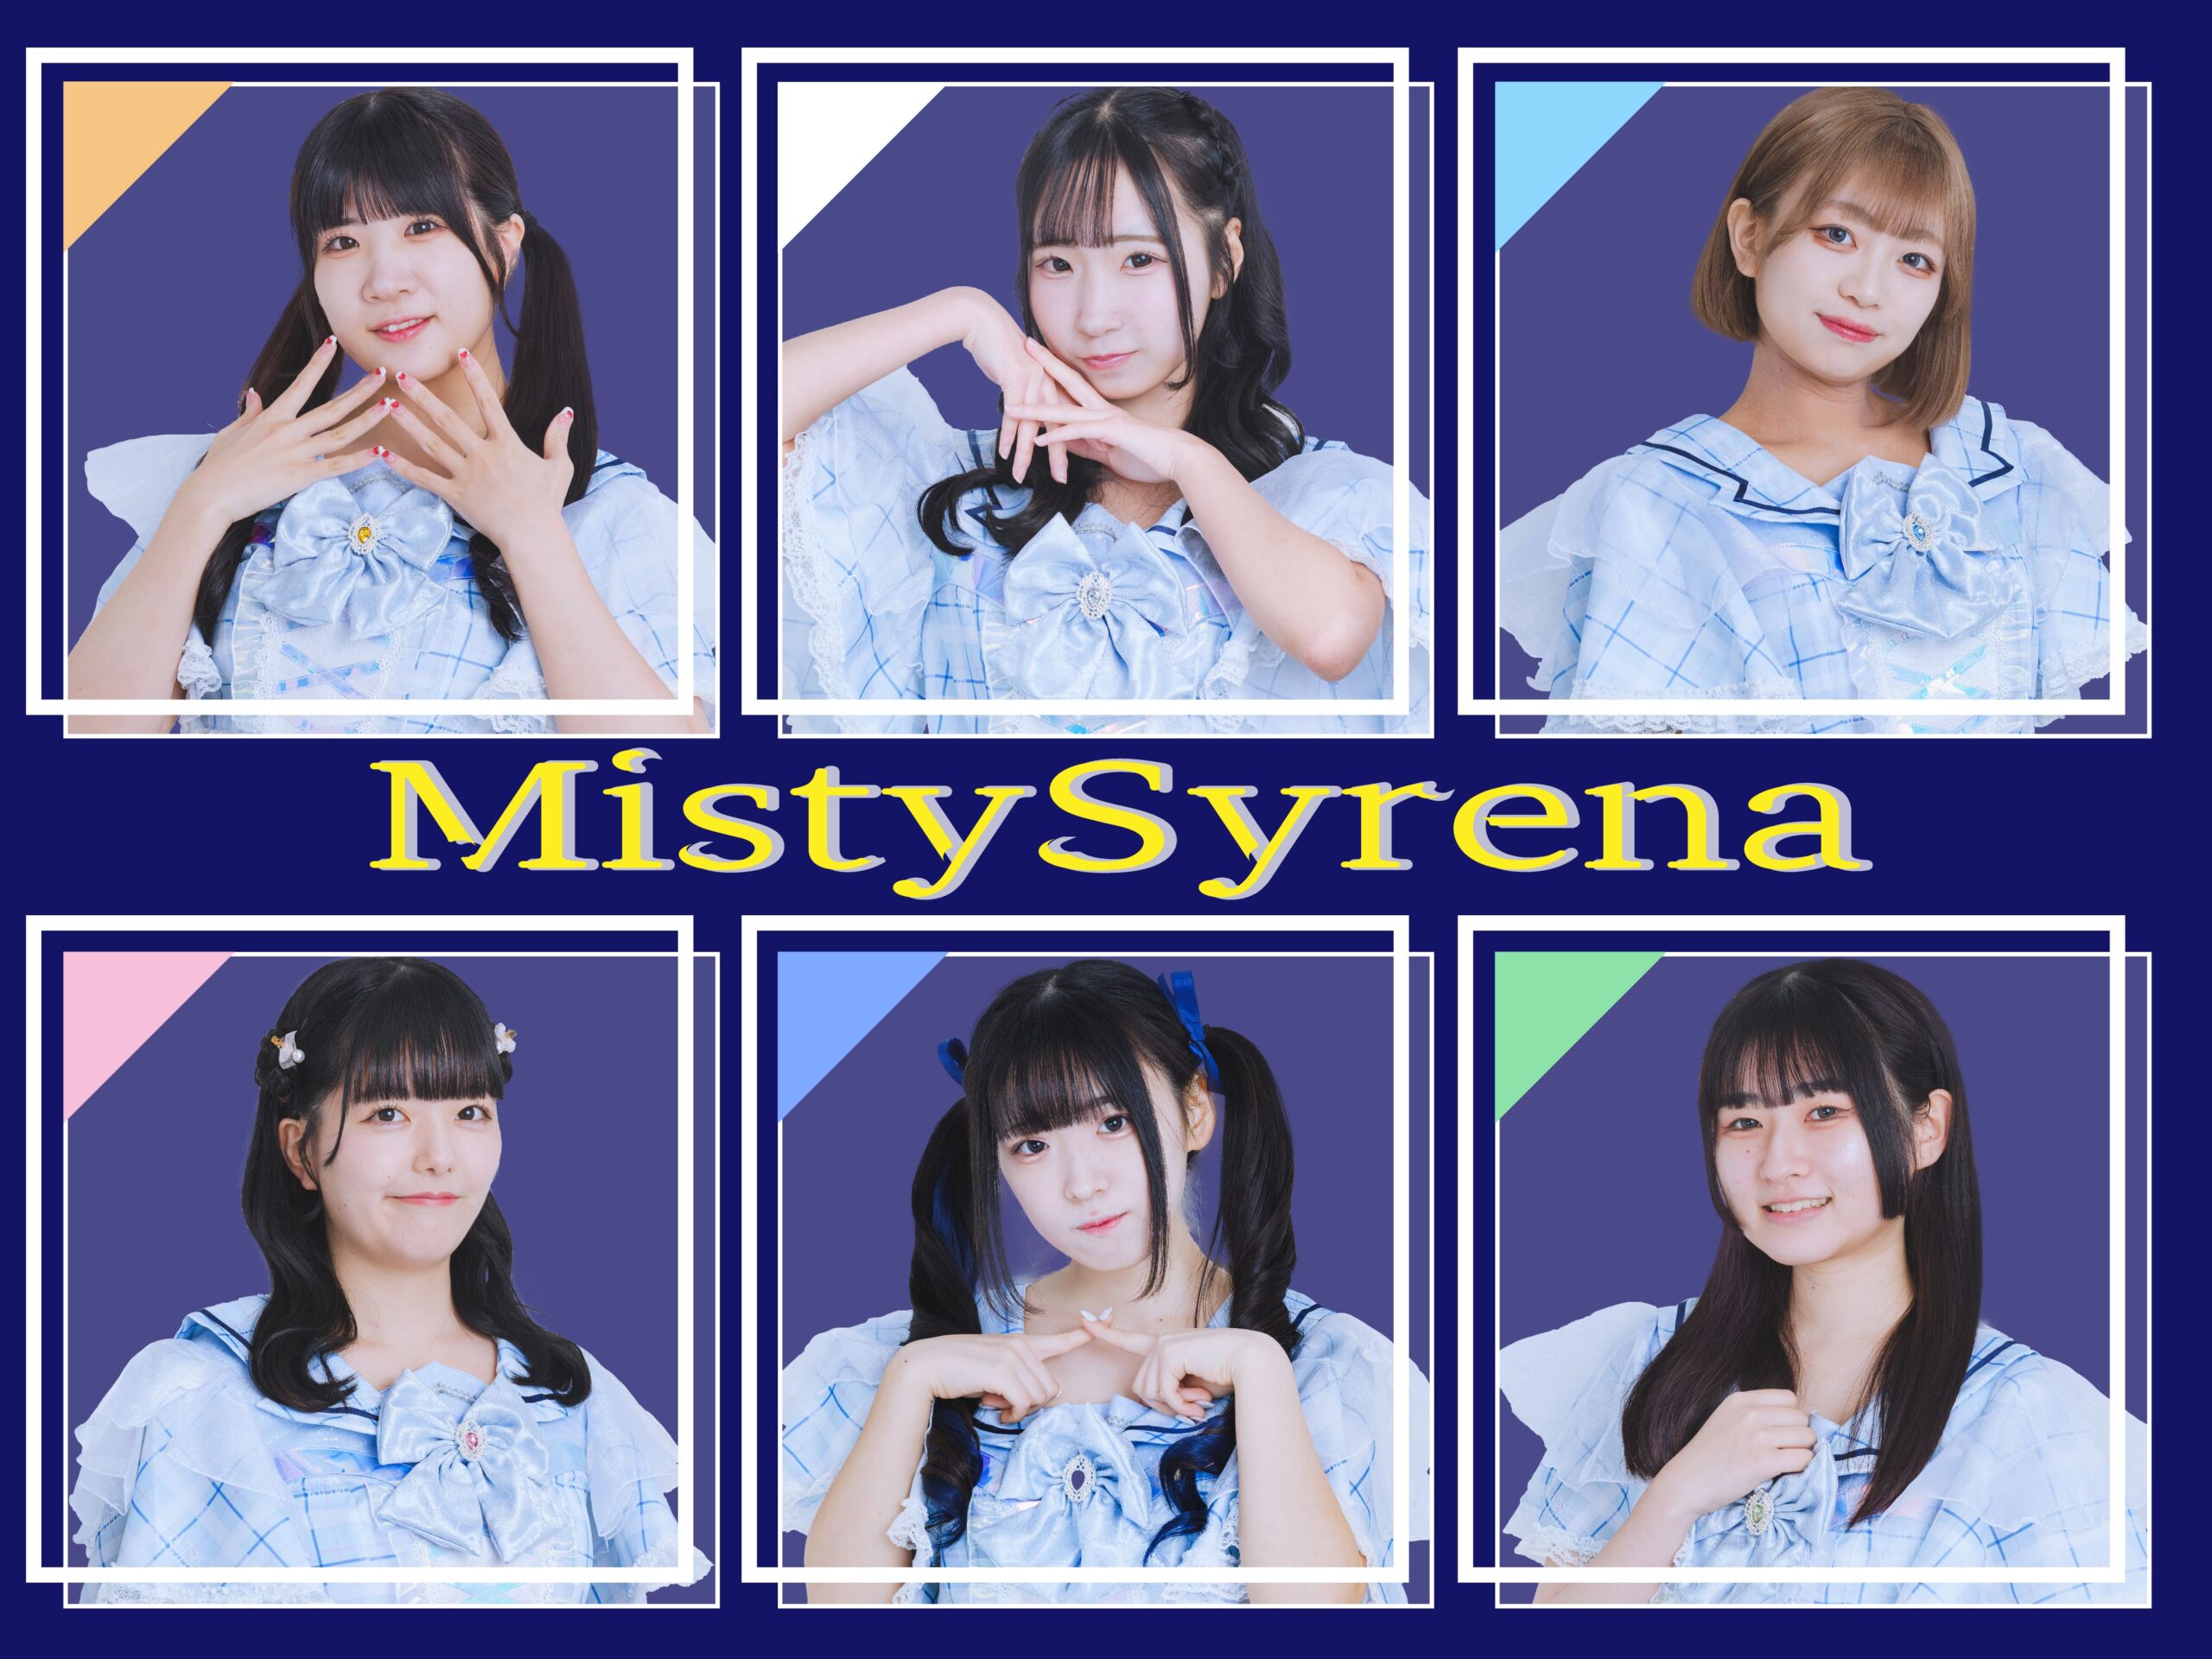 Misty Syrena